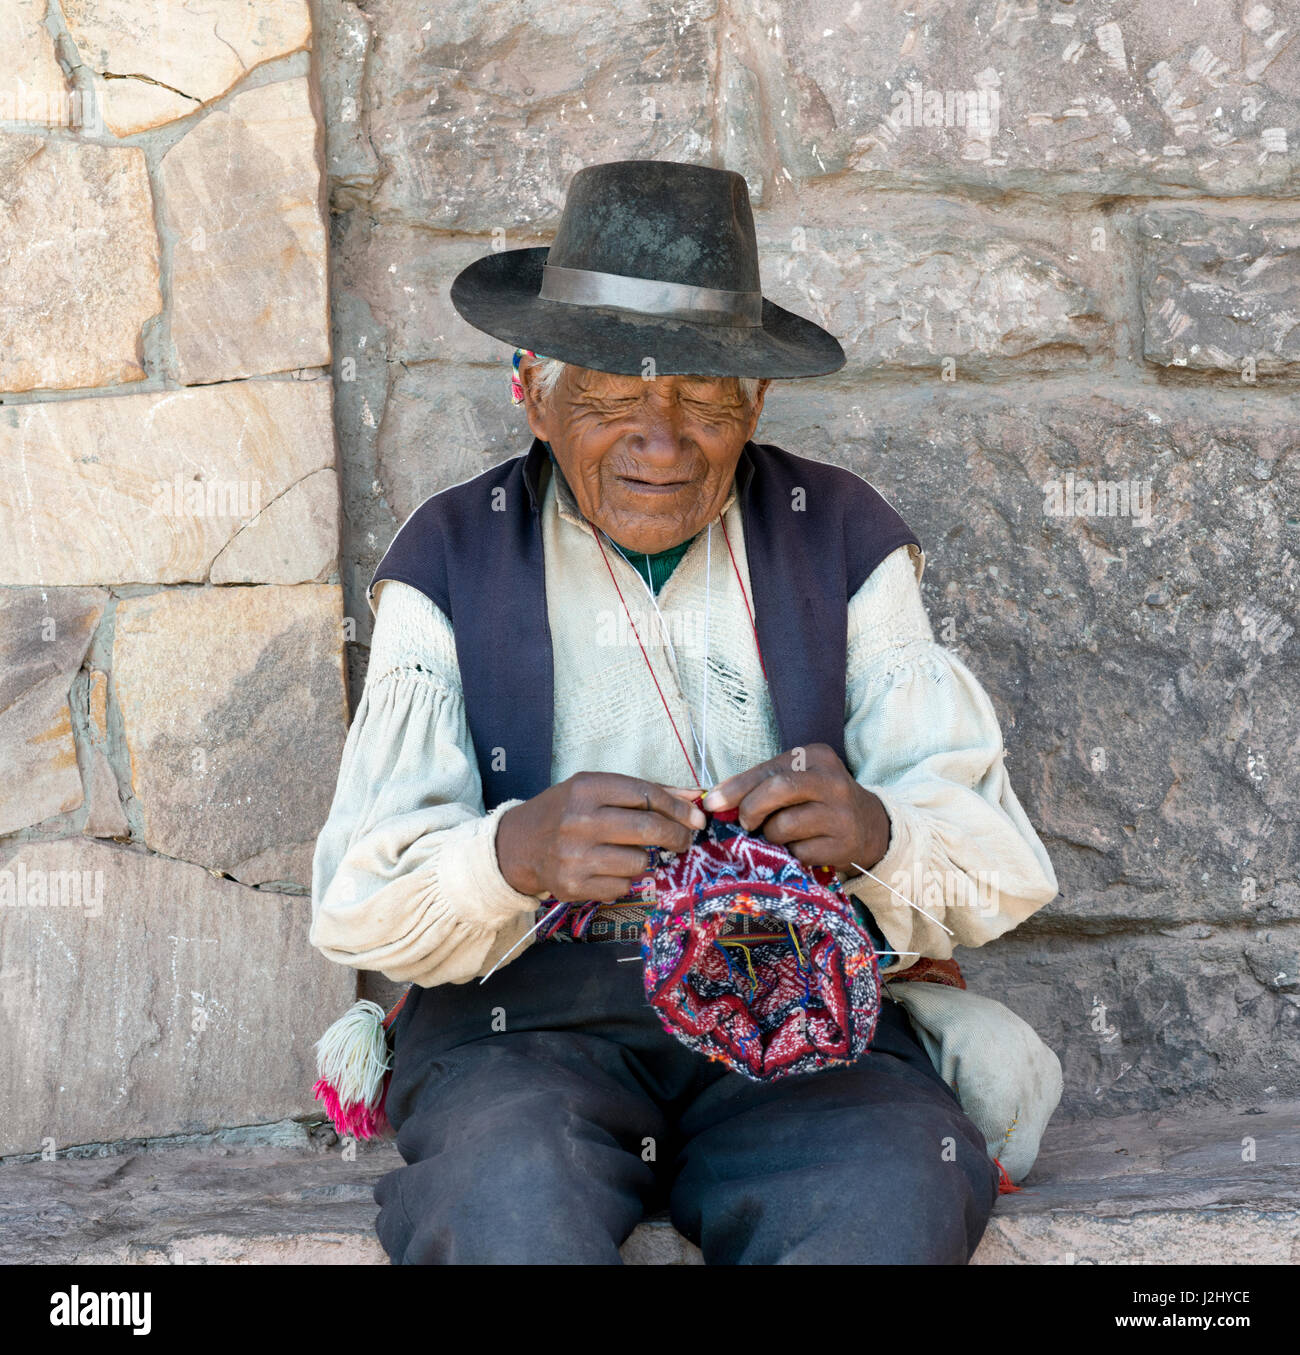 Peruanische native Mann eine Mütze stricken. 17. Oktober 2012 - Insel Taquile, Titicacasee, Peru Stockfoto